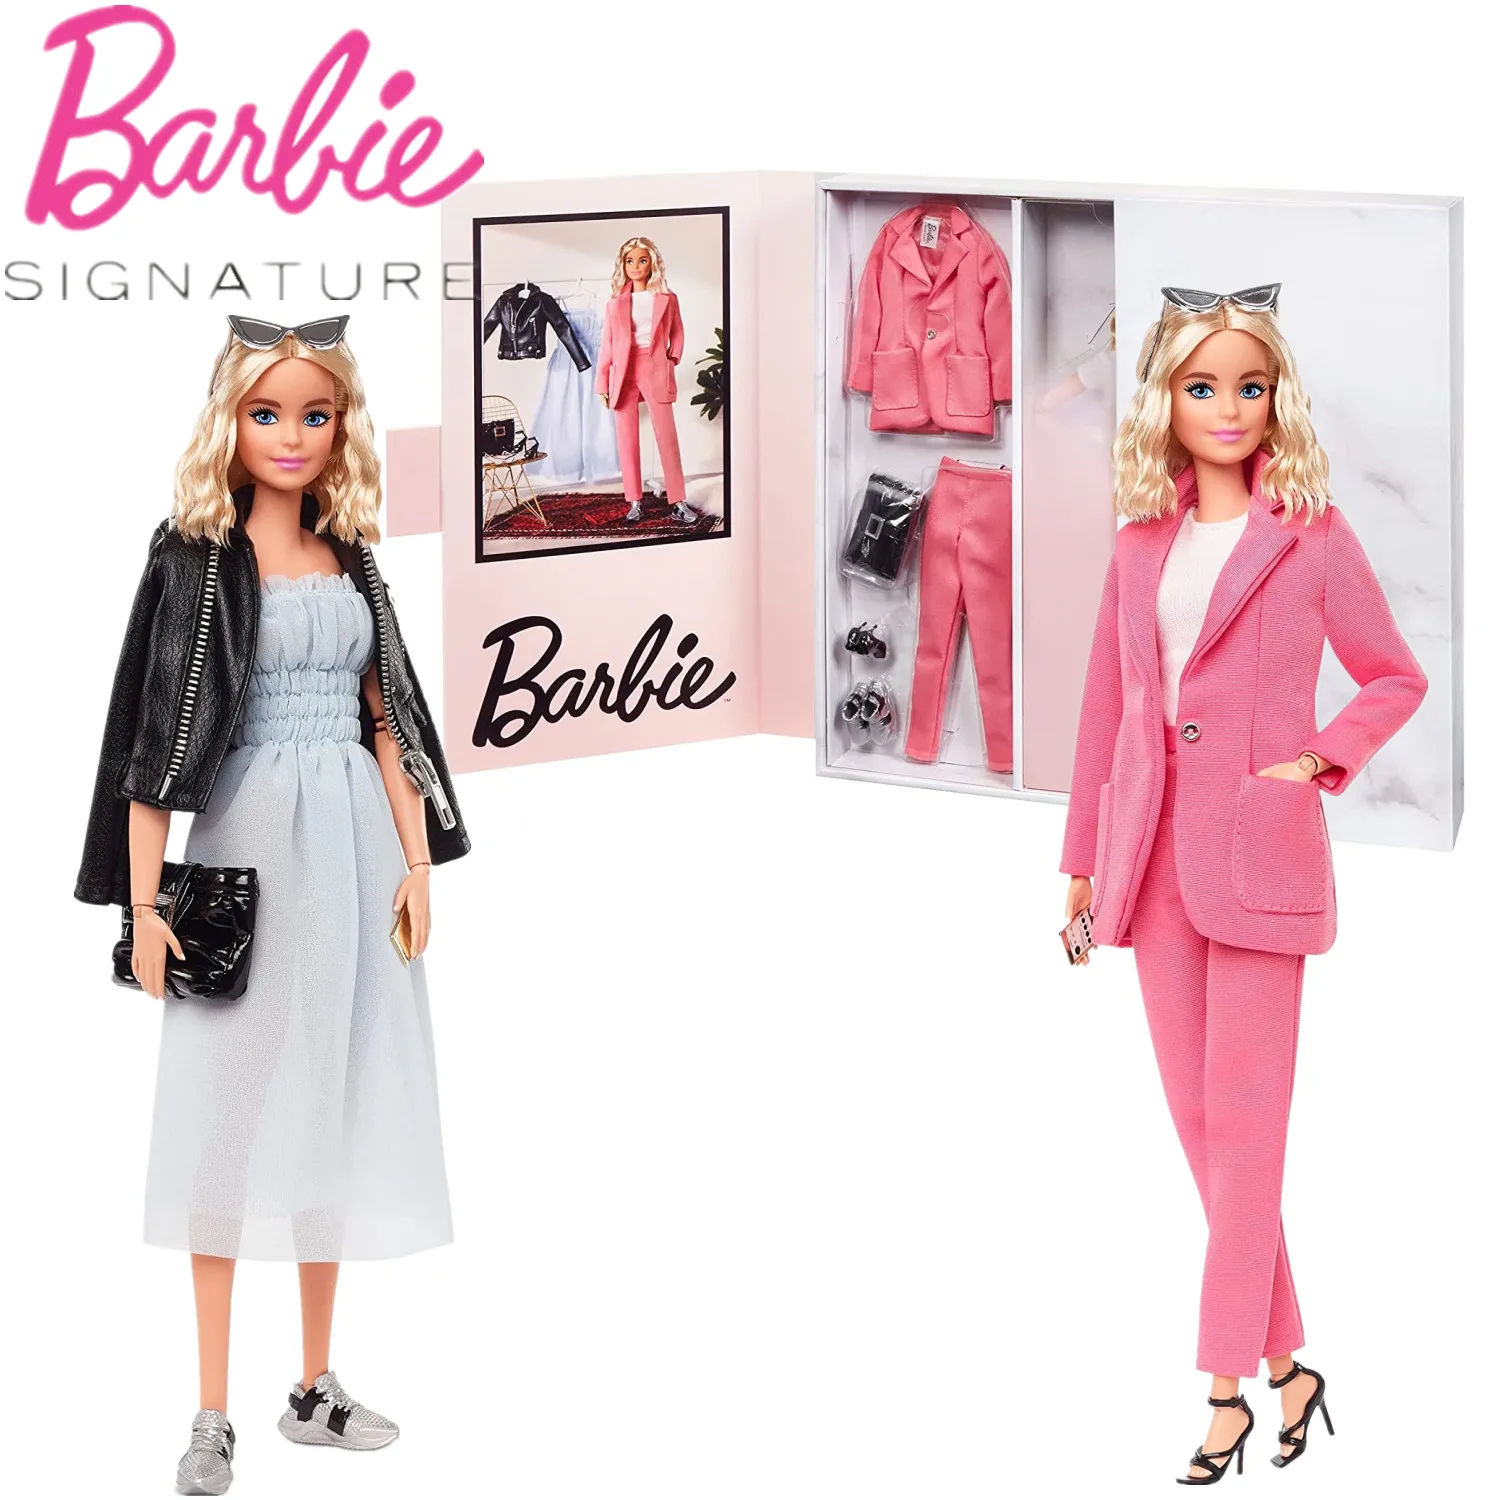 Muñeca BarbieStyle con Barbie, juguete hecho para mover el cuerpo, rosa de moda con accesorios, edición limitada, regalo para coleccionistas|Muñecas| -